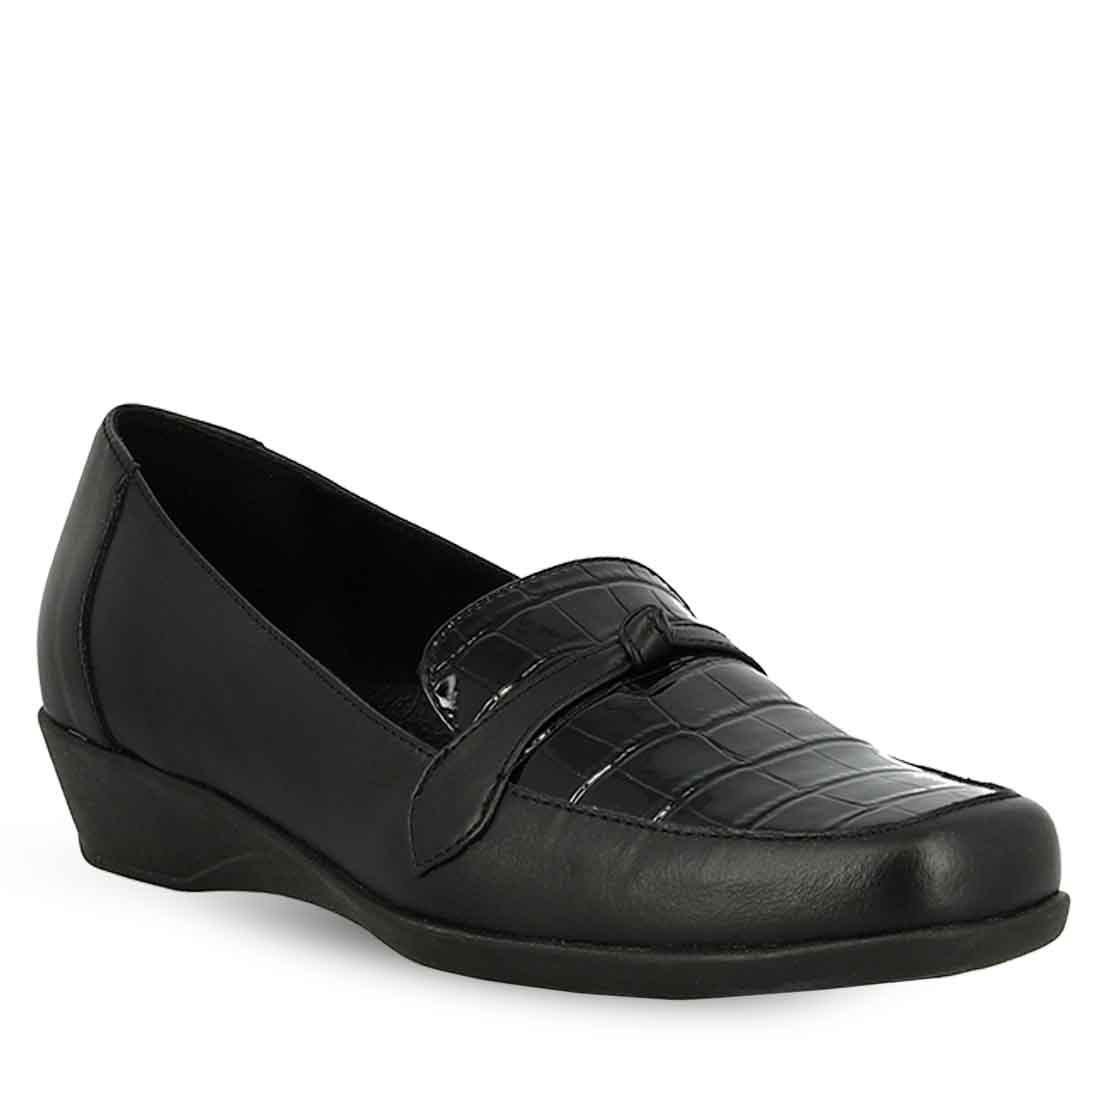 Γυναικείο ανατομικό  δερμάτινο μαύρο  παπούτσι Parex 10526006.Β